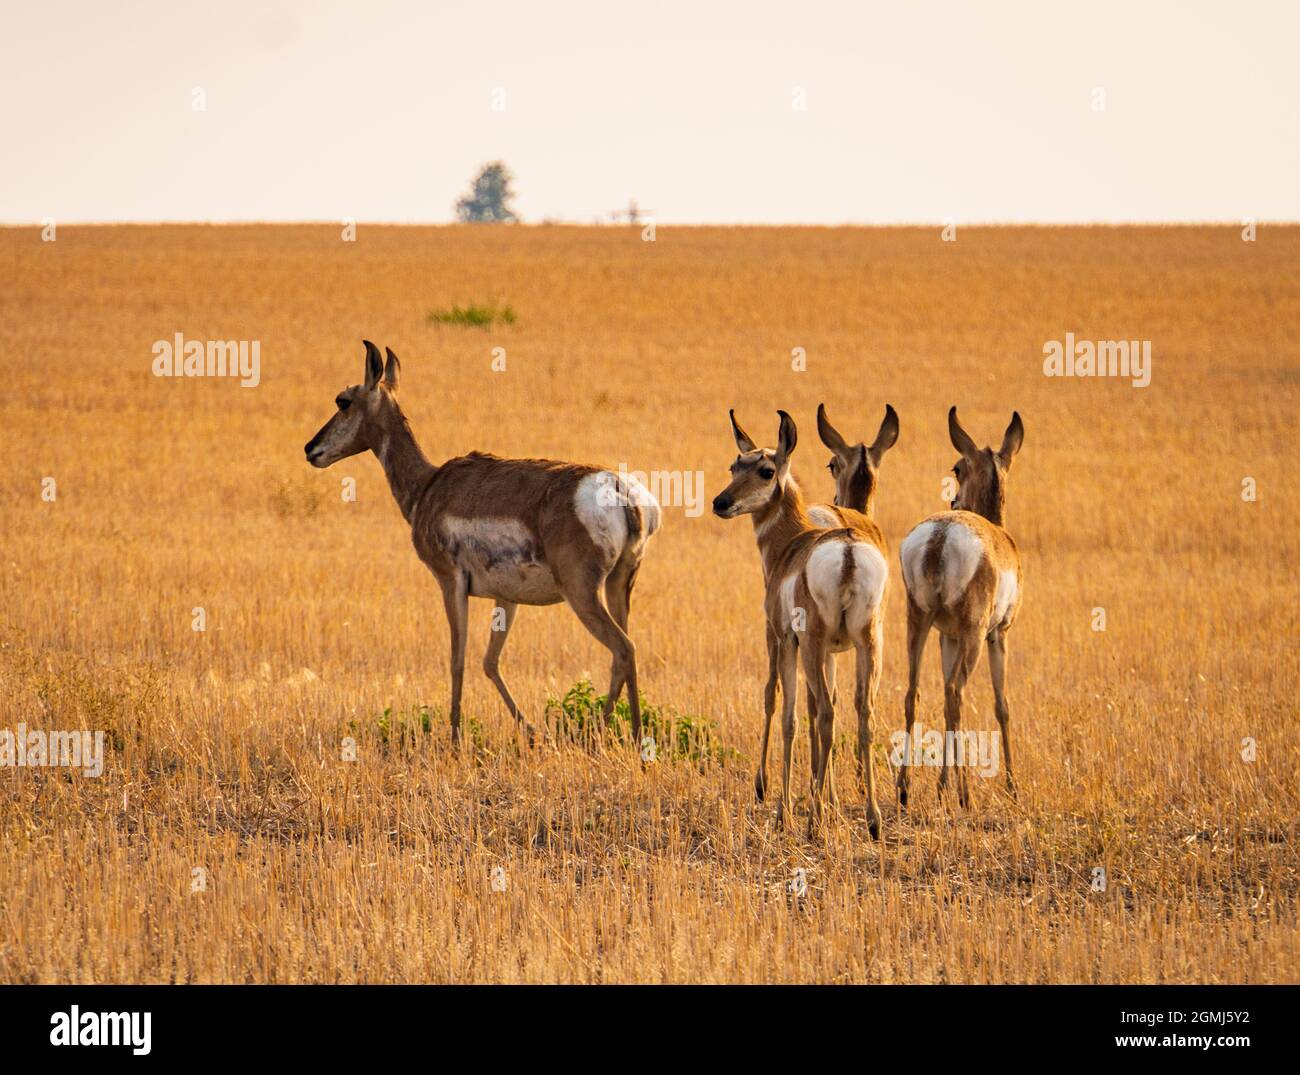 pronghorn, un animal sauvage de type antilope, sur les prairies du Montana Banque D'Images